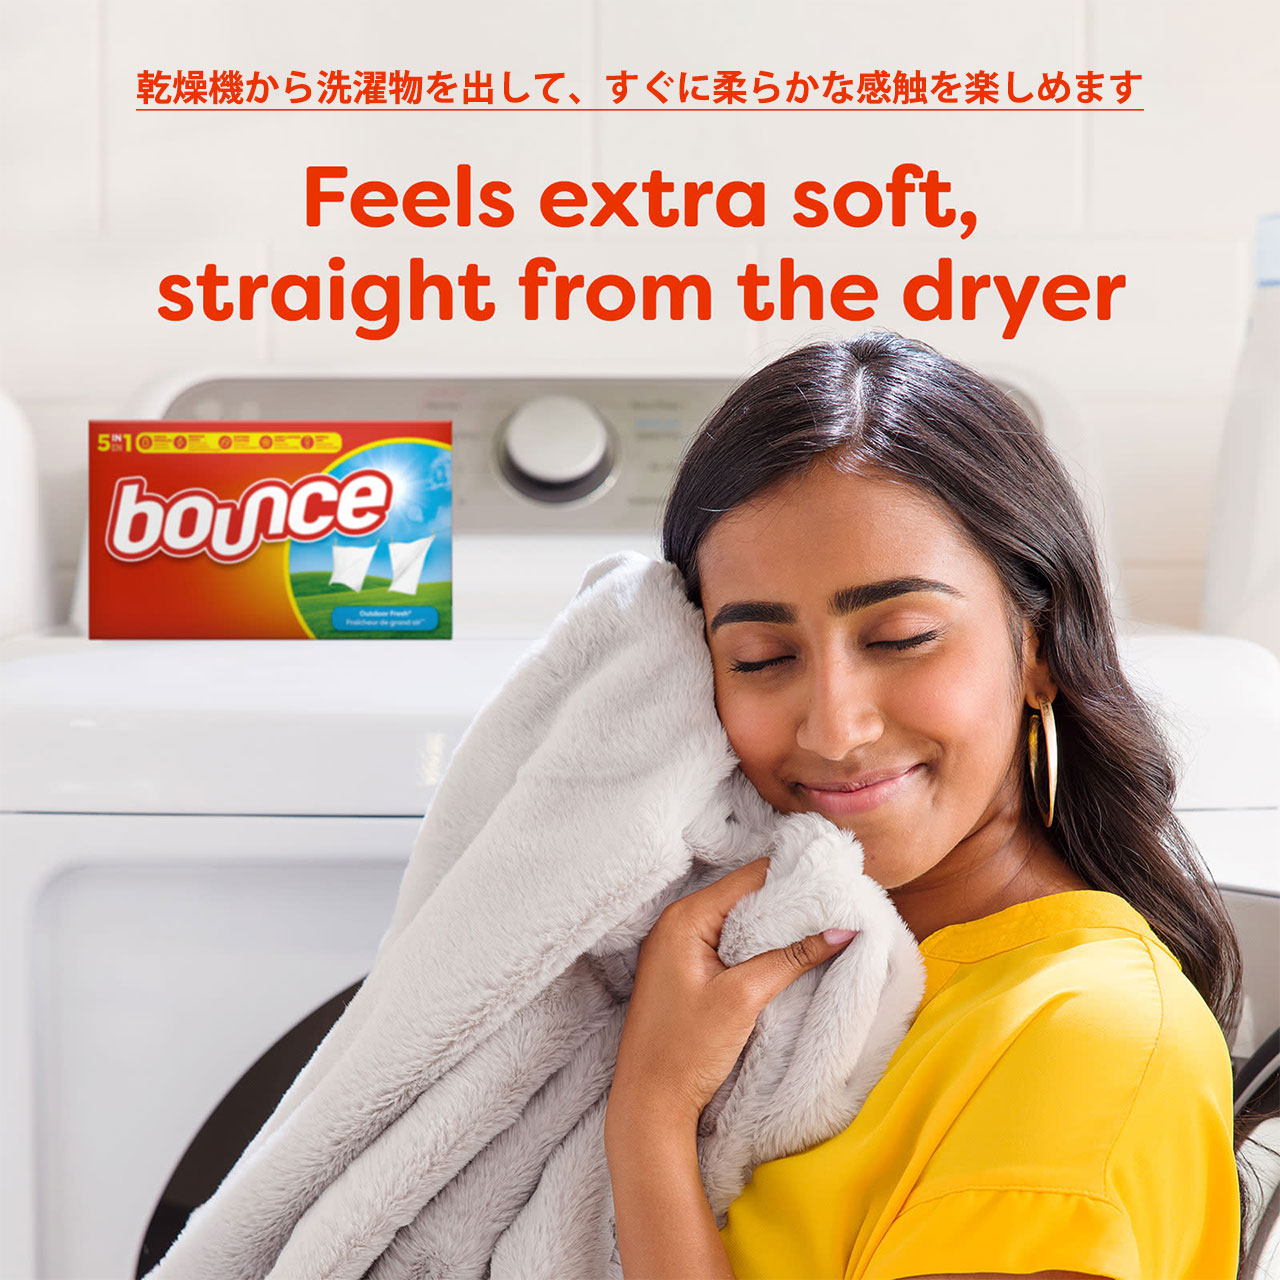 楽天市場】Bounce (バウンス) Outdoor Fresh Fabric Softener Dryer